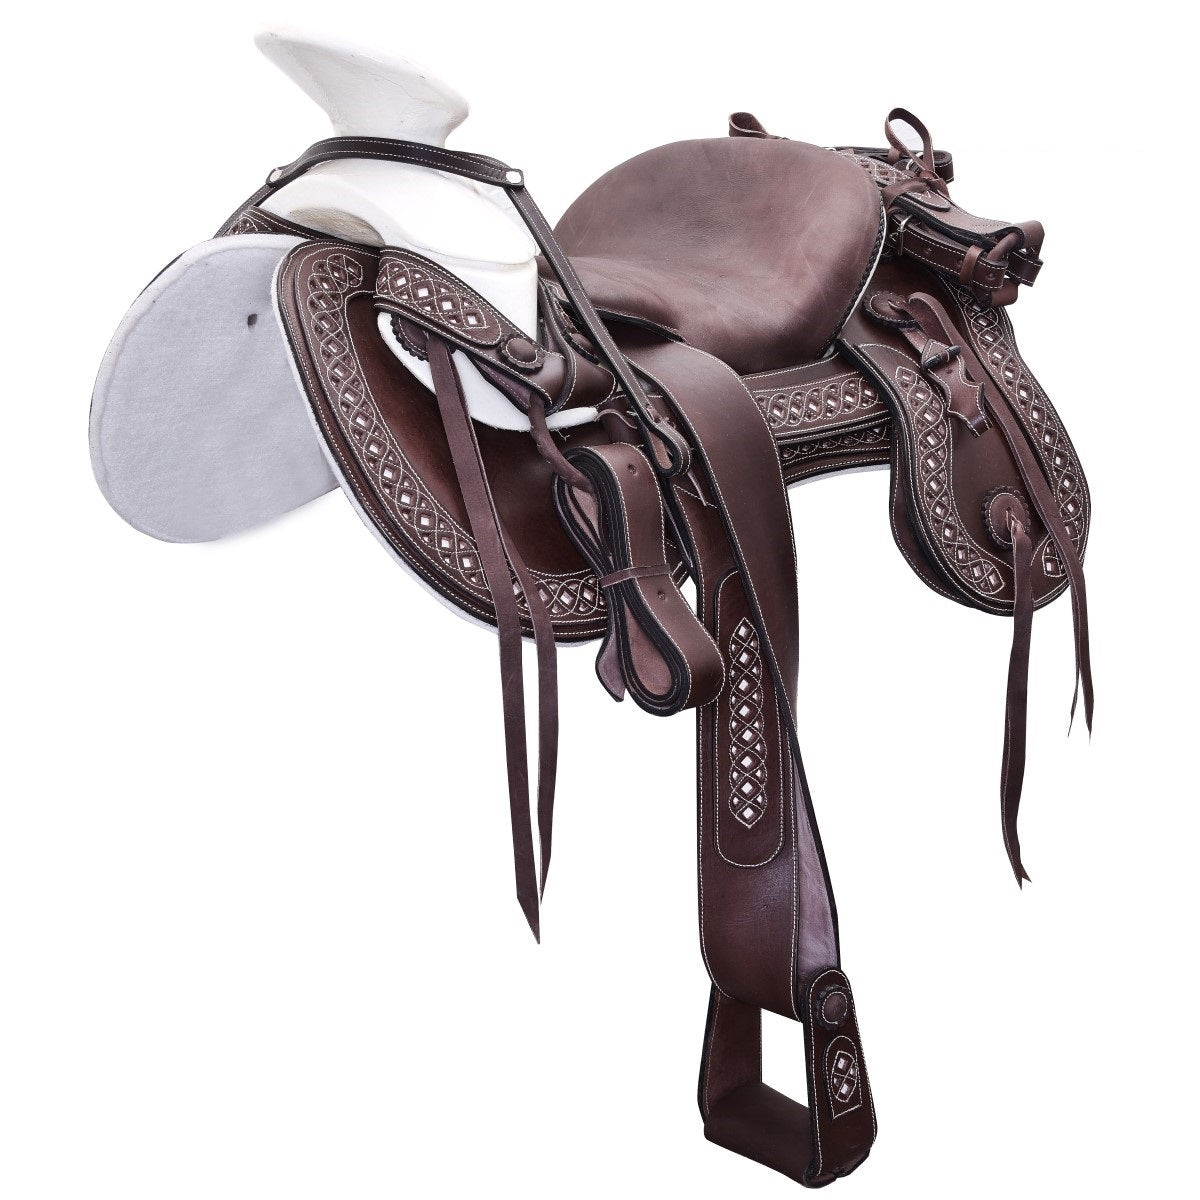 Silla de Montar para Caballo TM-WD1073-1038 Brown - Horse Saddle